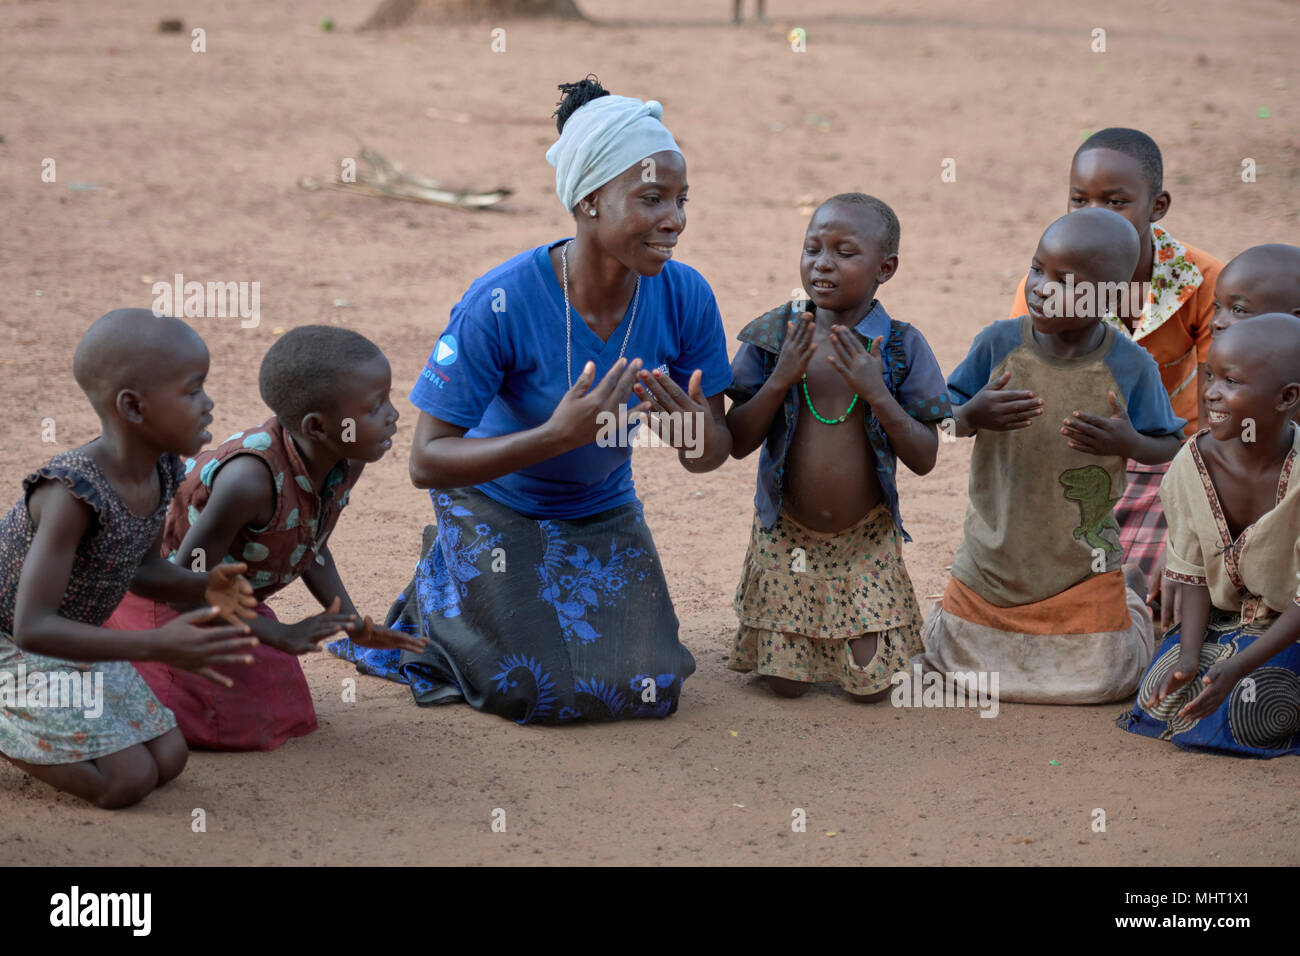 Un educador de la YWCA juegan con los niños desplazados por el conflicto armado en el sur de Sudán. Foto de stock